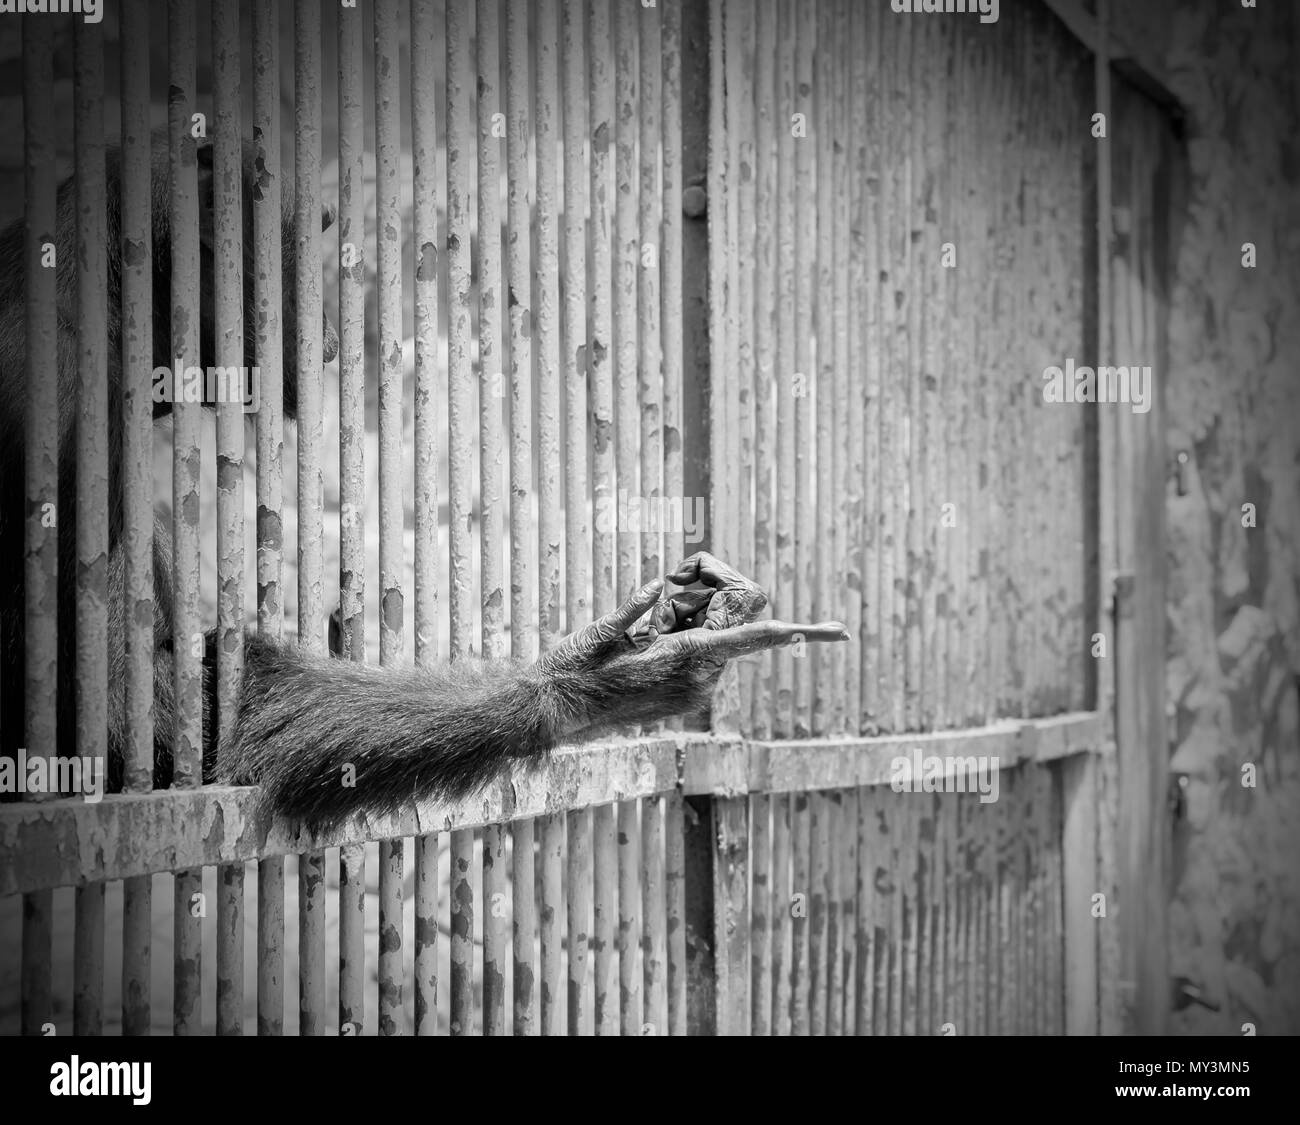 Monkey ausgestreckten Arm von Cage. Schwarze und weiße Ton. Der illegale Handel mit wildlebenden Tier- und Pflanzenarten. Stockfoto